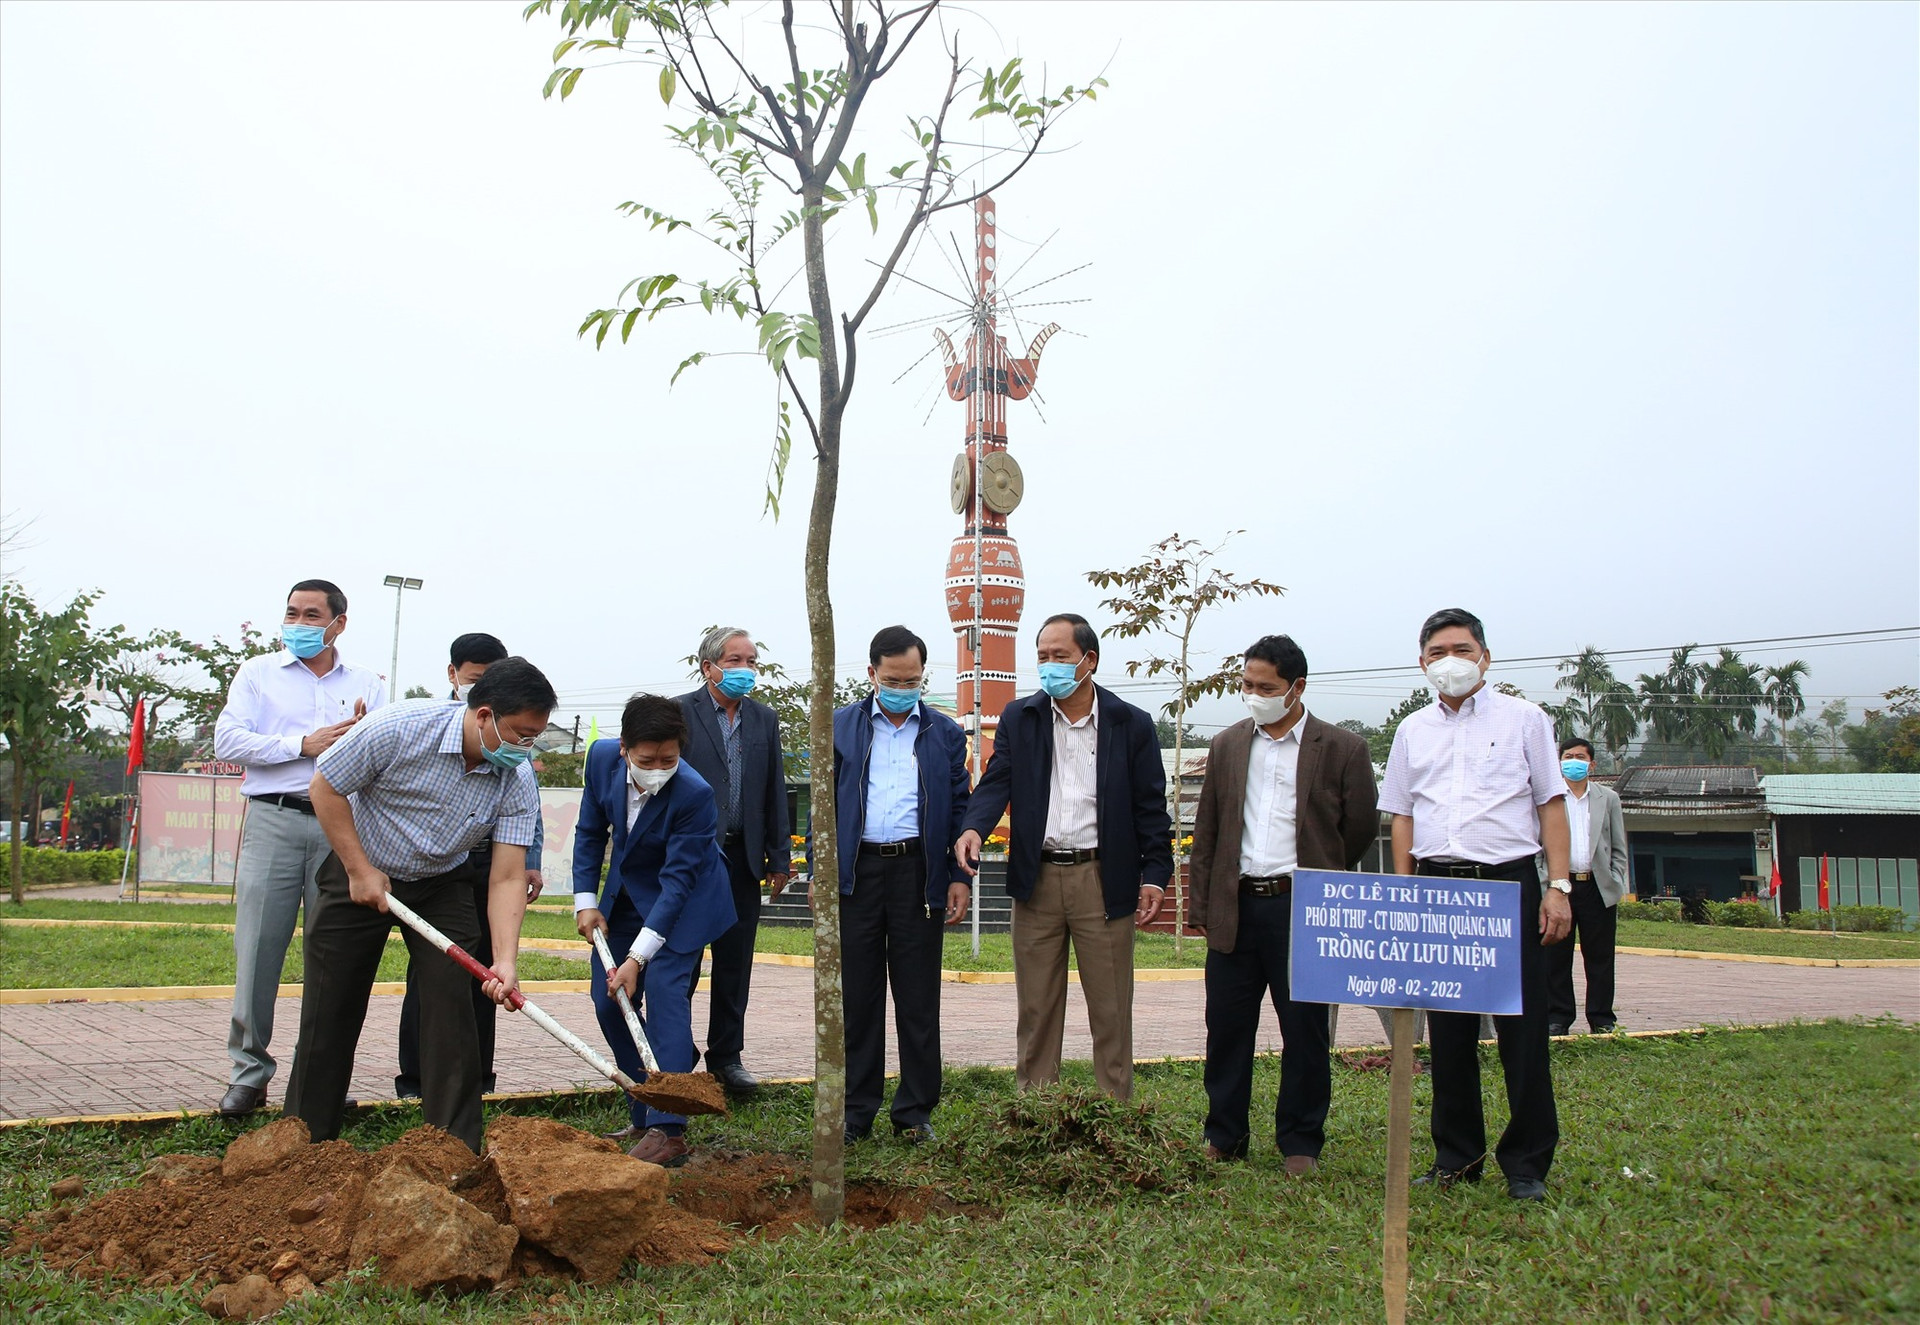 Chủ tịch UBND tỉnh Lê Trí Thanh trồng cây lưu niệm tại Công viên văn hóa xã Ba. Ảnh: A.N